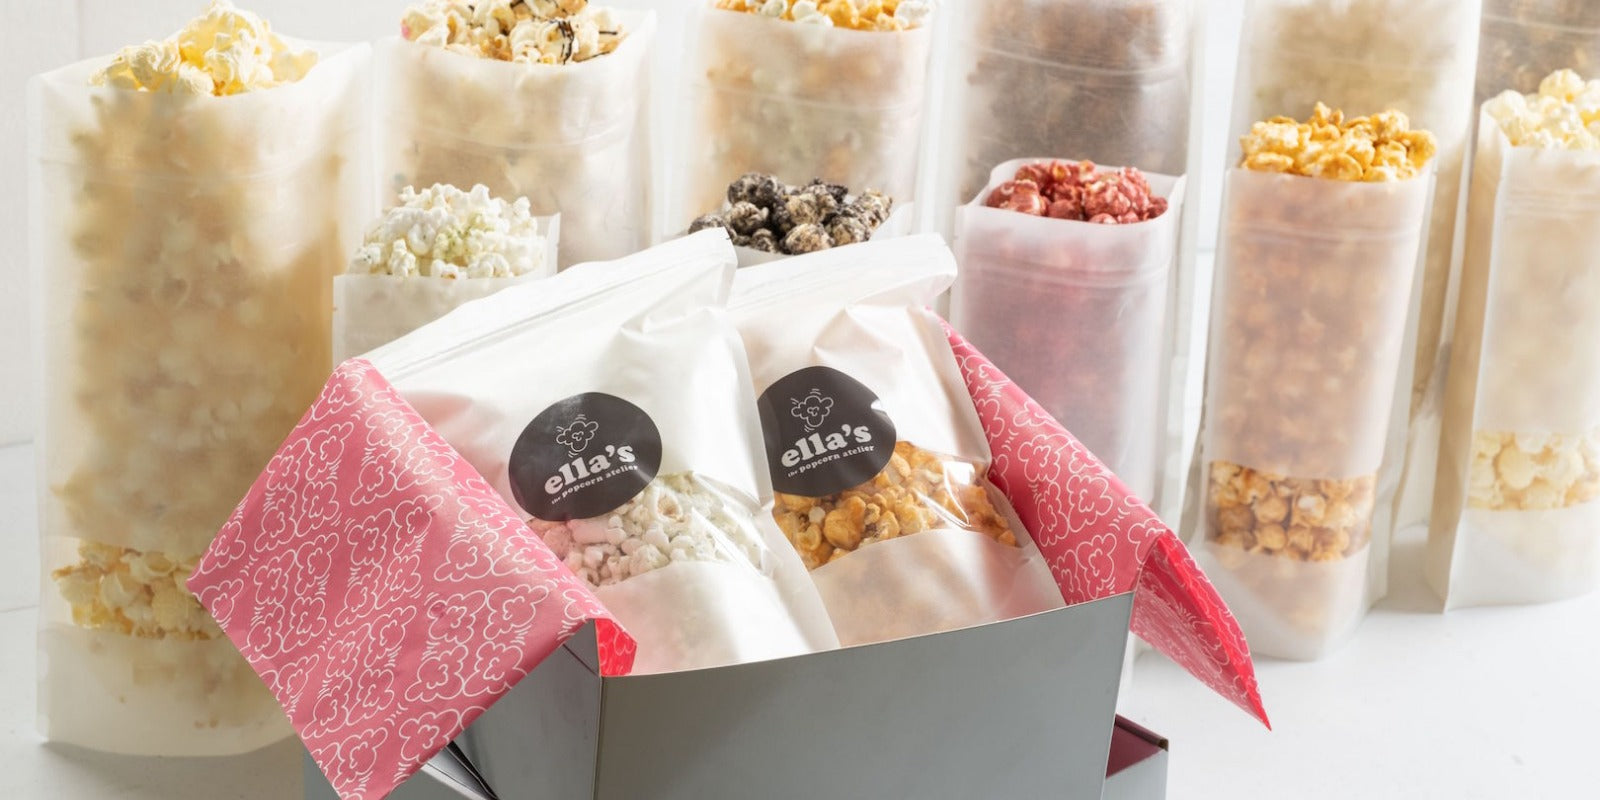 Meet the Maker: Ella's Popcorn